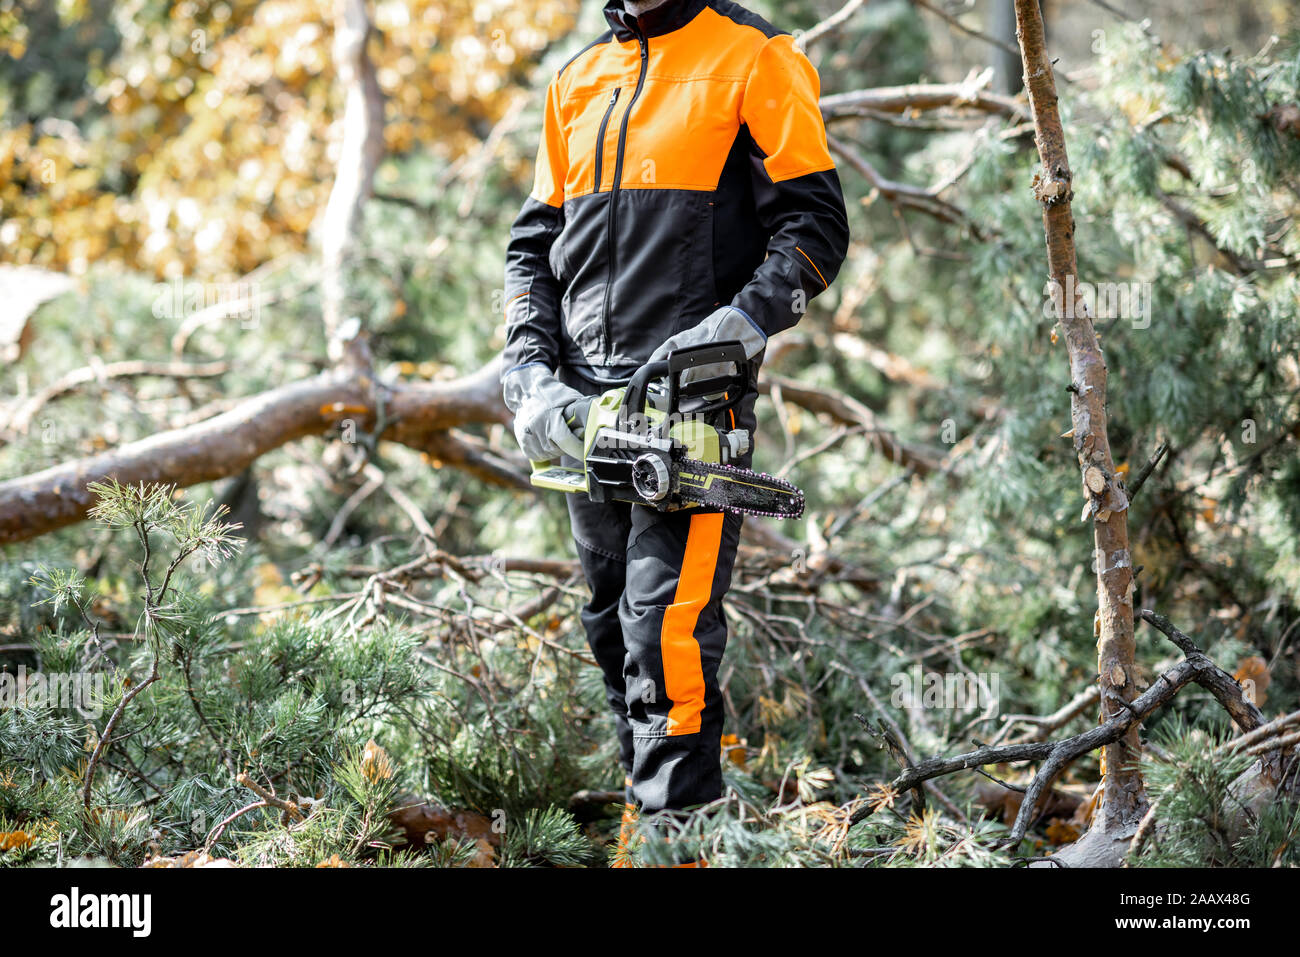 Ritratto di un professionista lumberman in indumenti da lavoro protettiva registrazione con chainsaw nella foresta di pini, close-up con faccia ritagliata Foto Stock